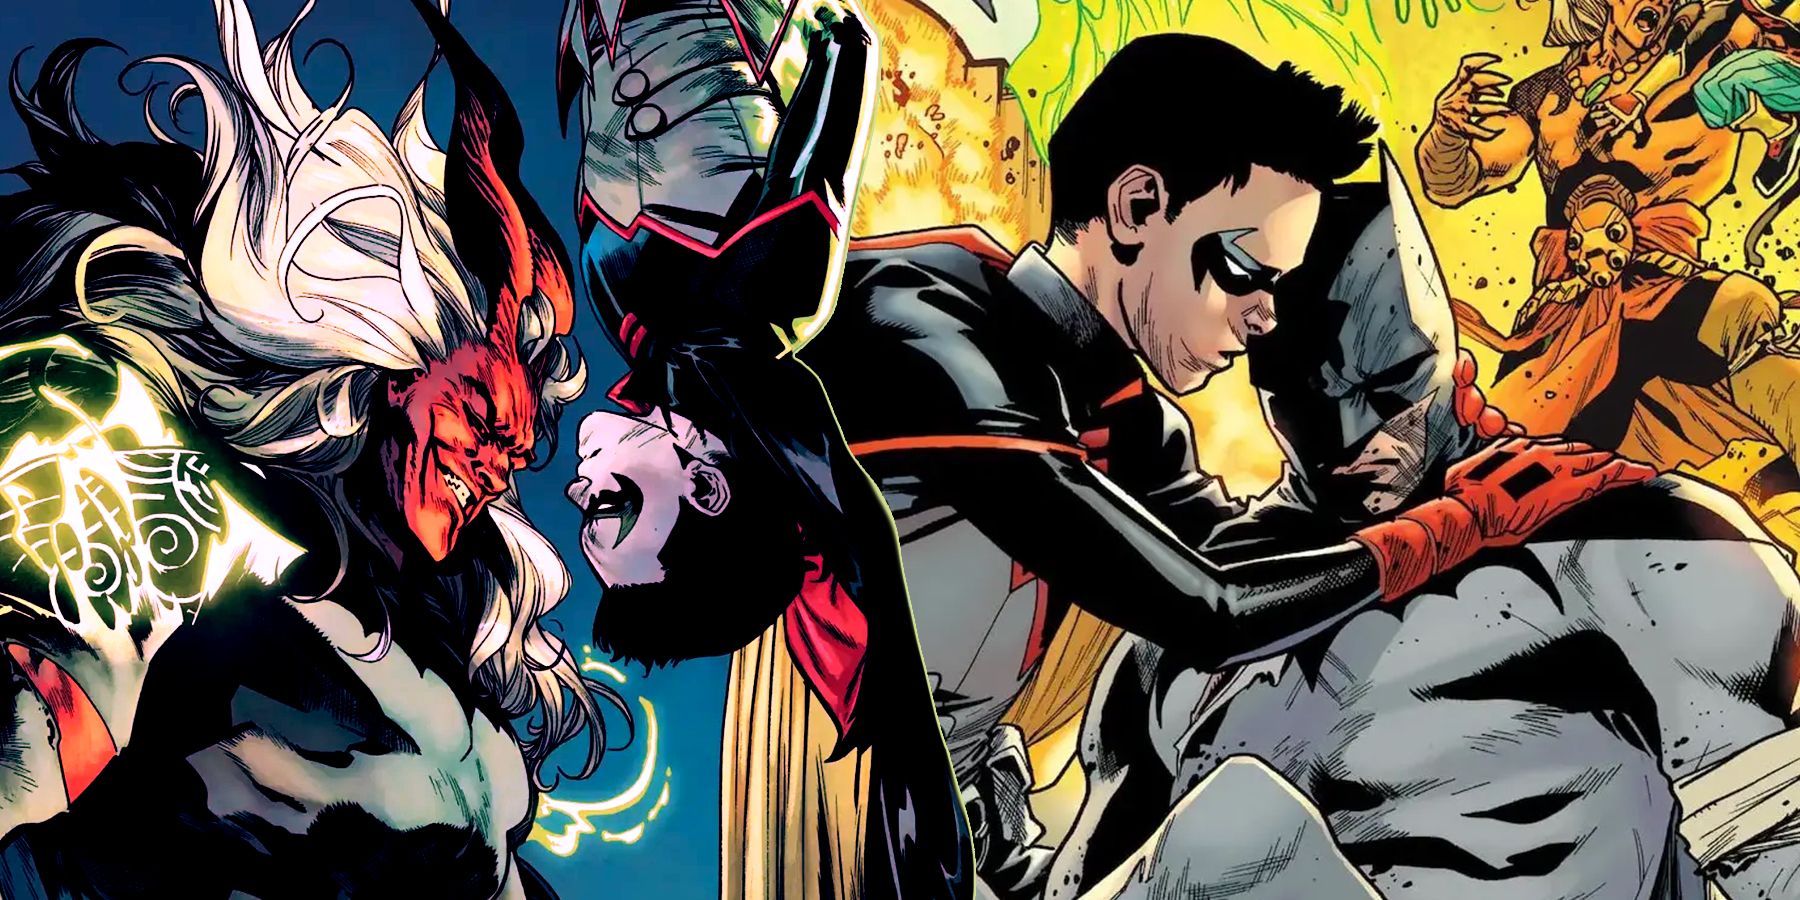 Damian Wayne facing off against a possessed Batman and cradling Batman's body